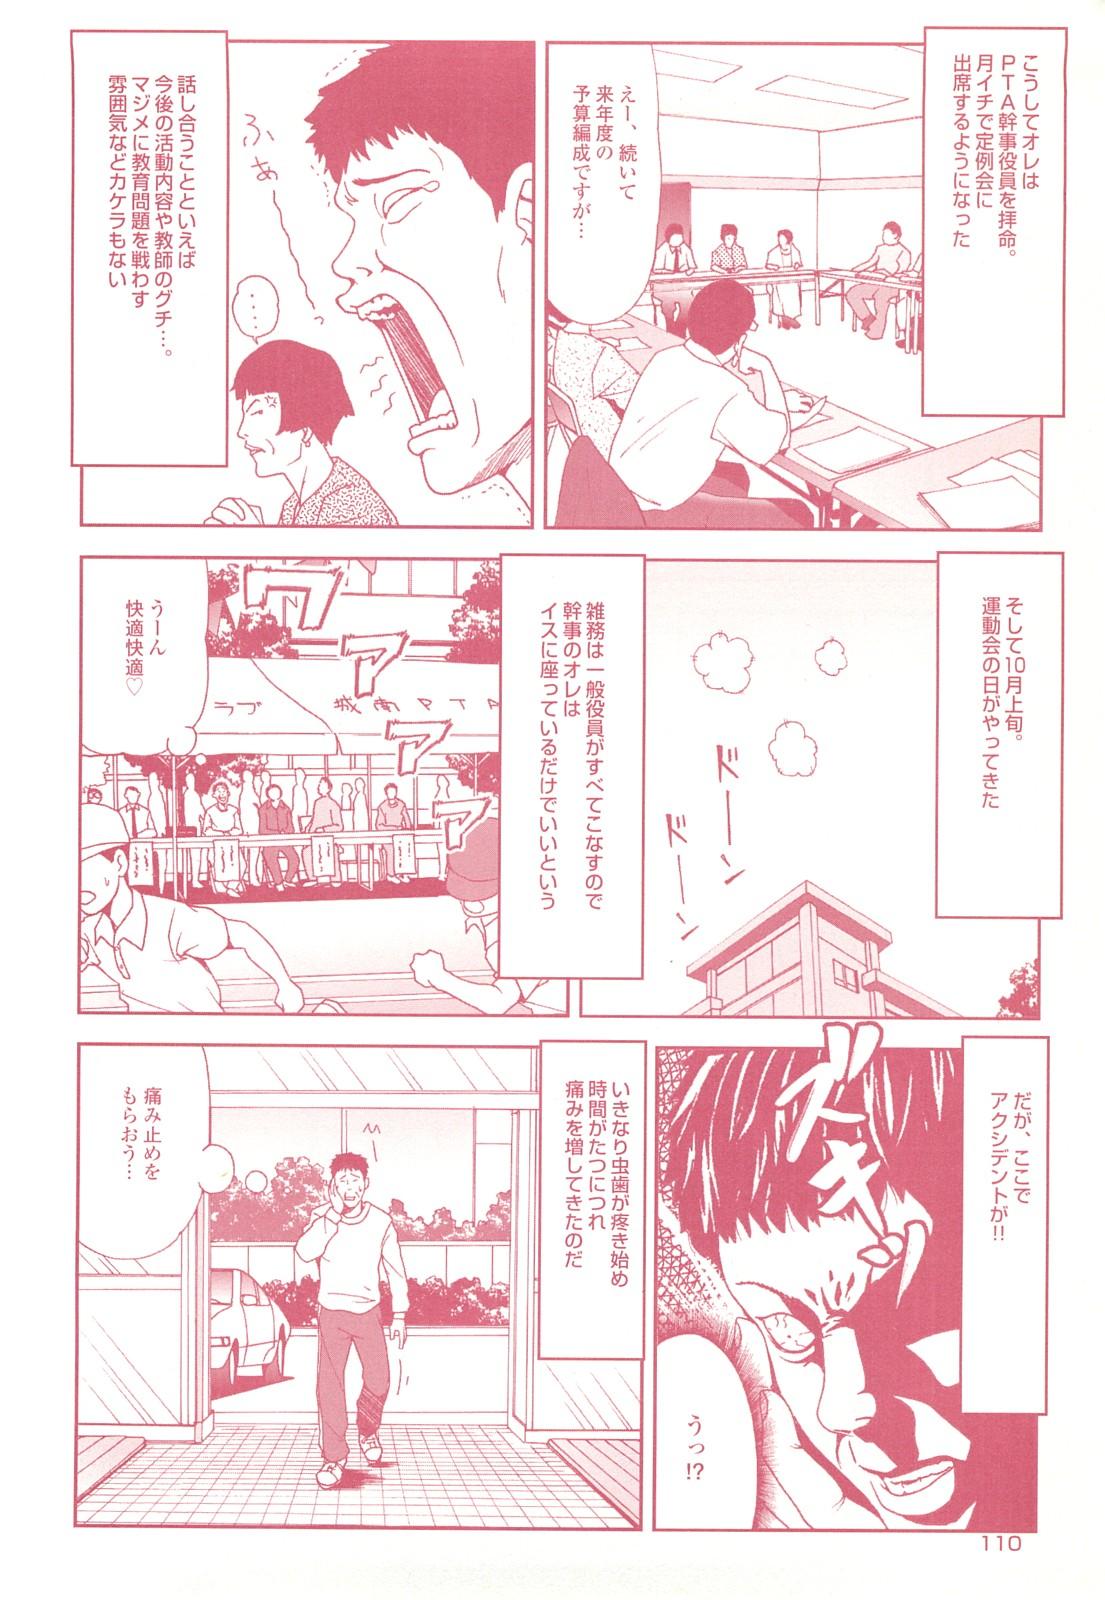 コミック裏モノJAPAN Vol.18 今井のりたつスペシャル号 109